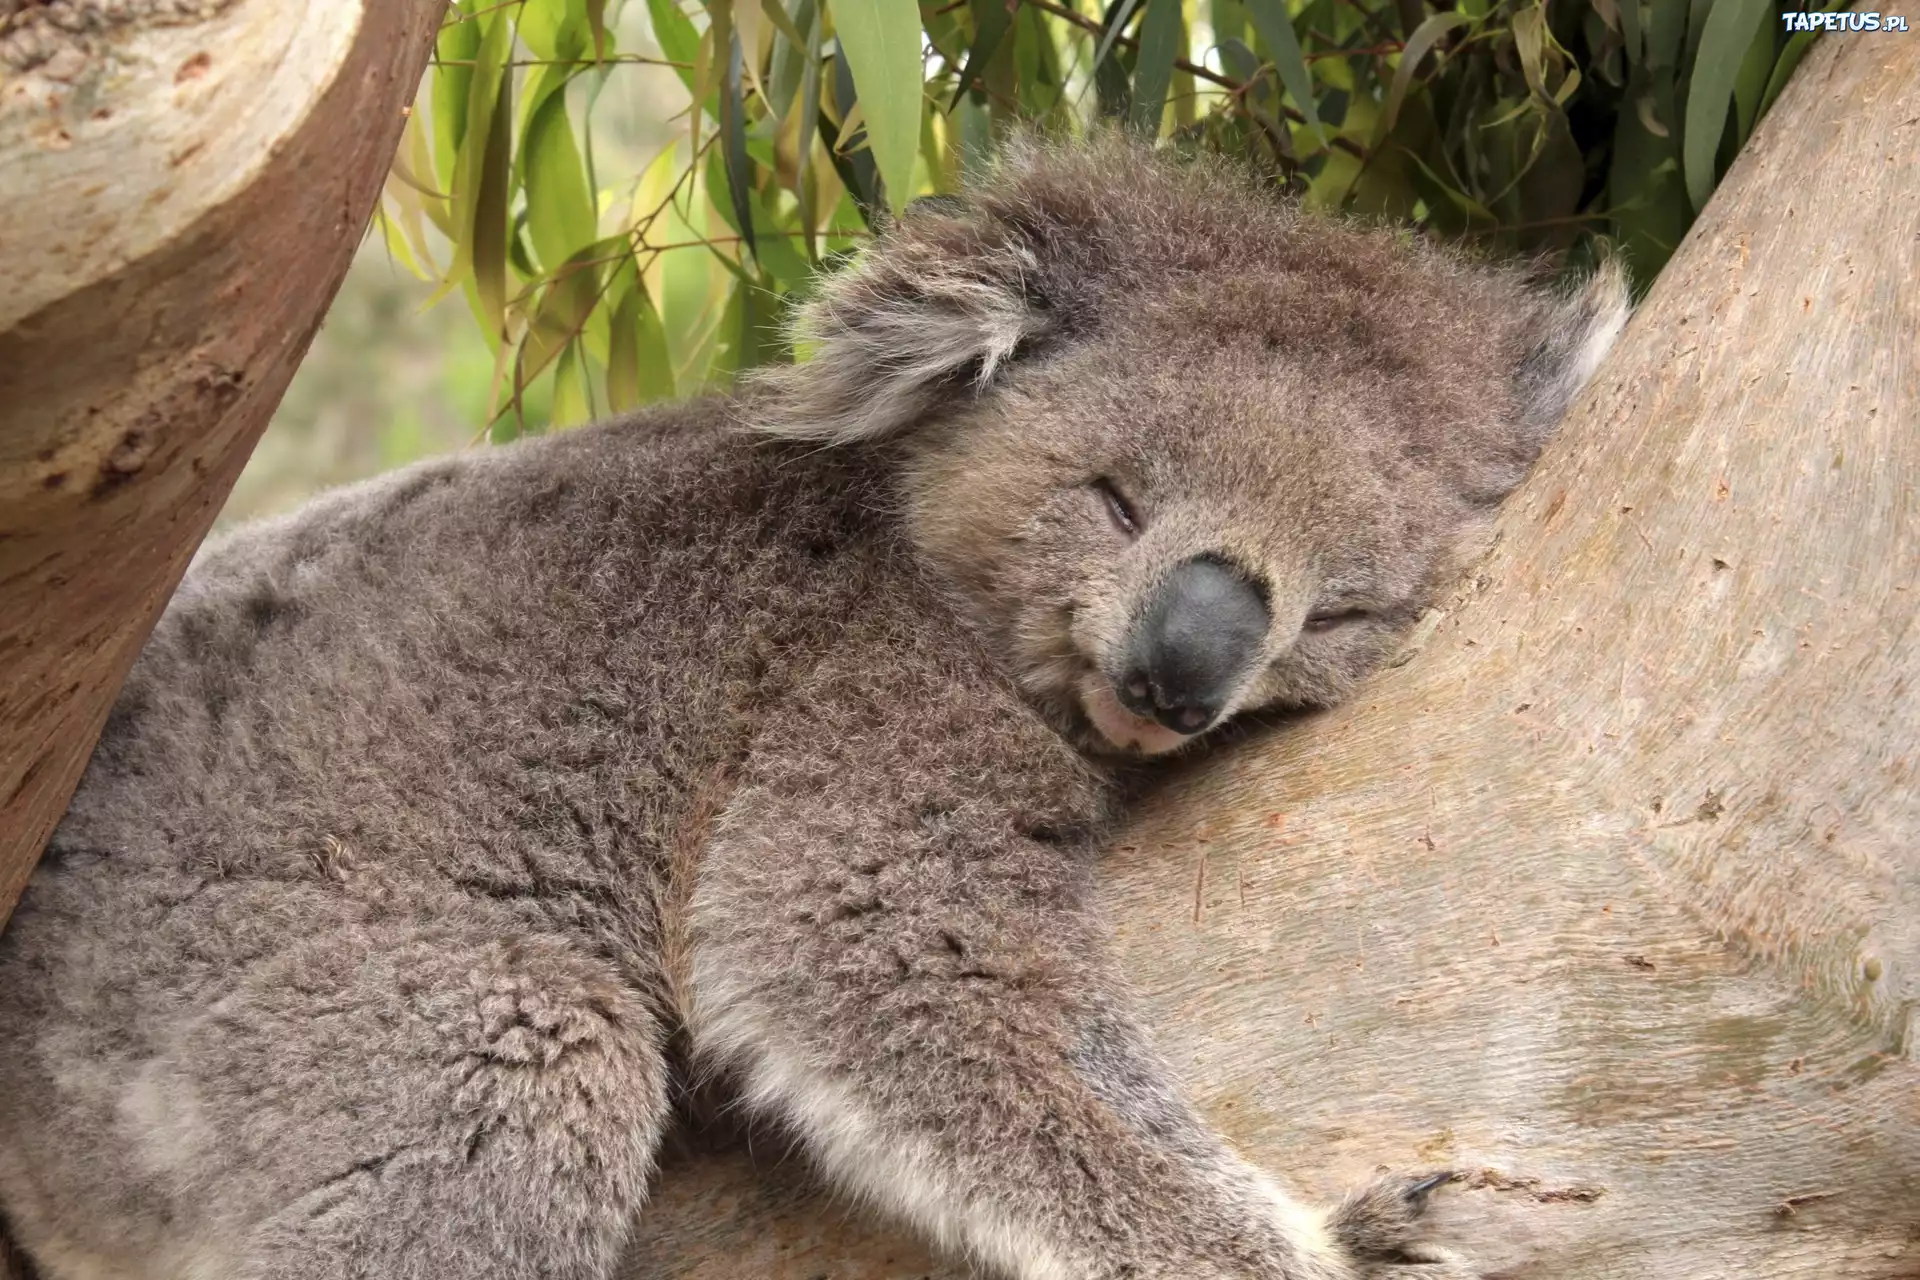 Znalezione obrazy dla zapytania miś koala